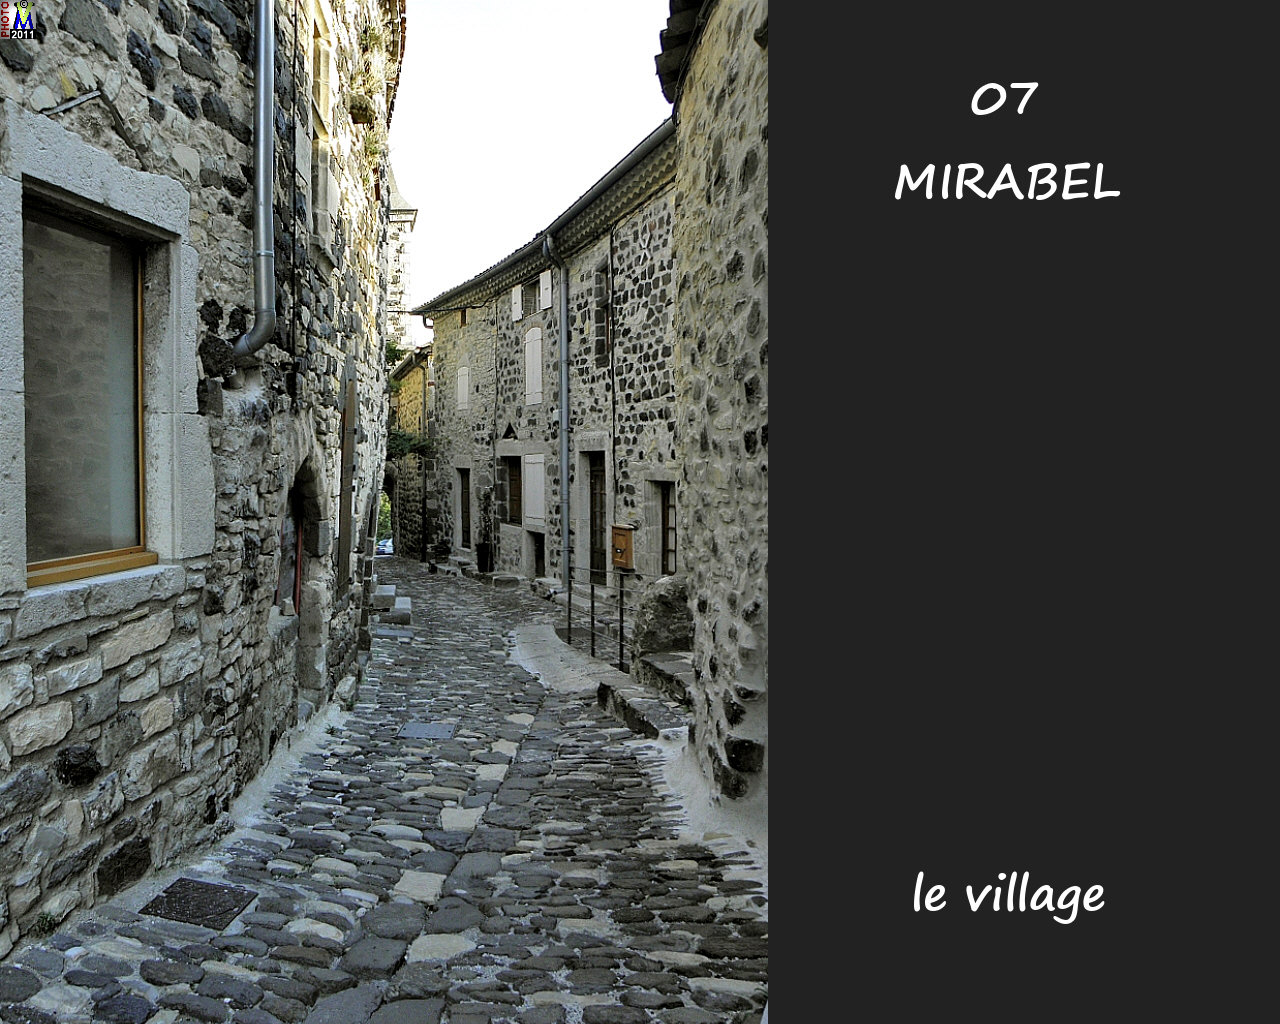 07MIRABEL_village_124.jpg